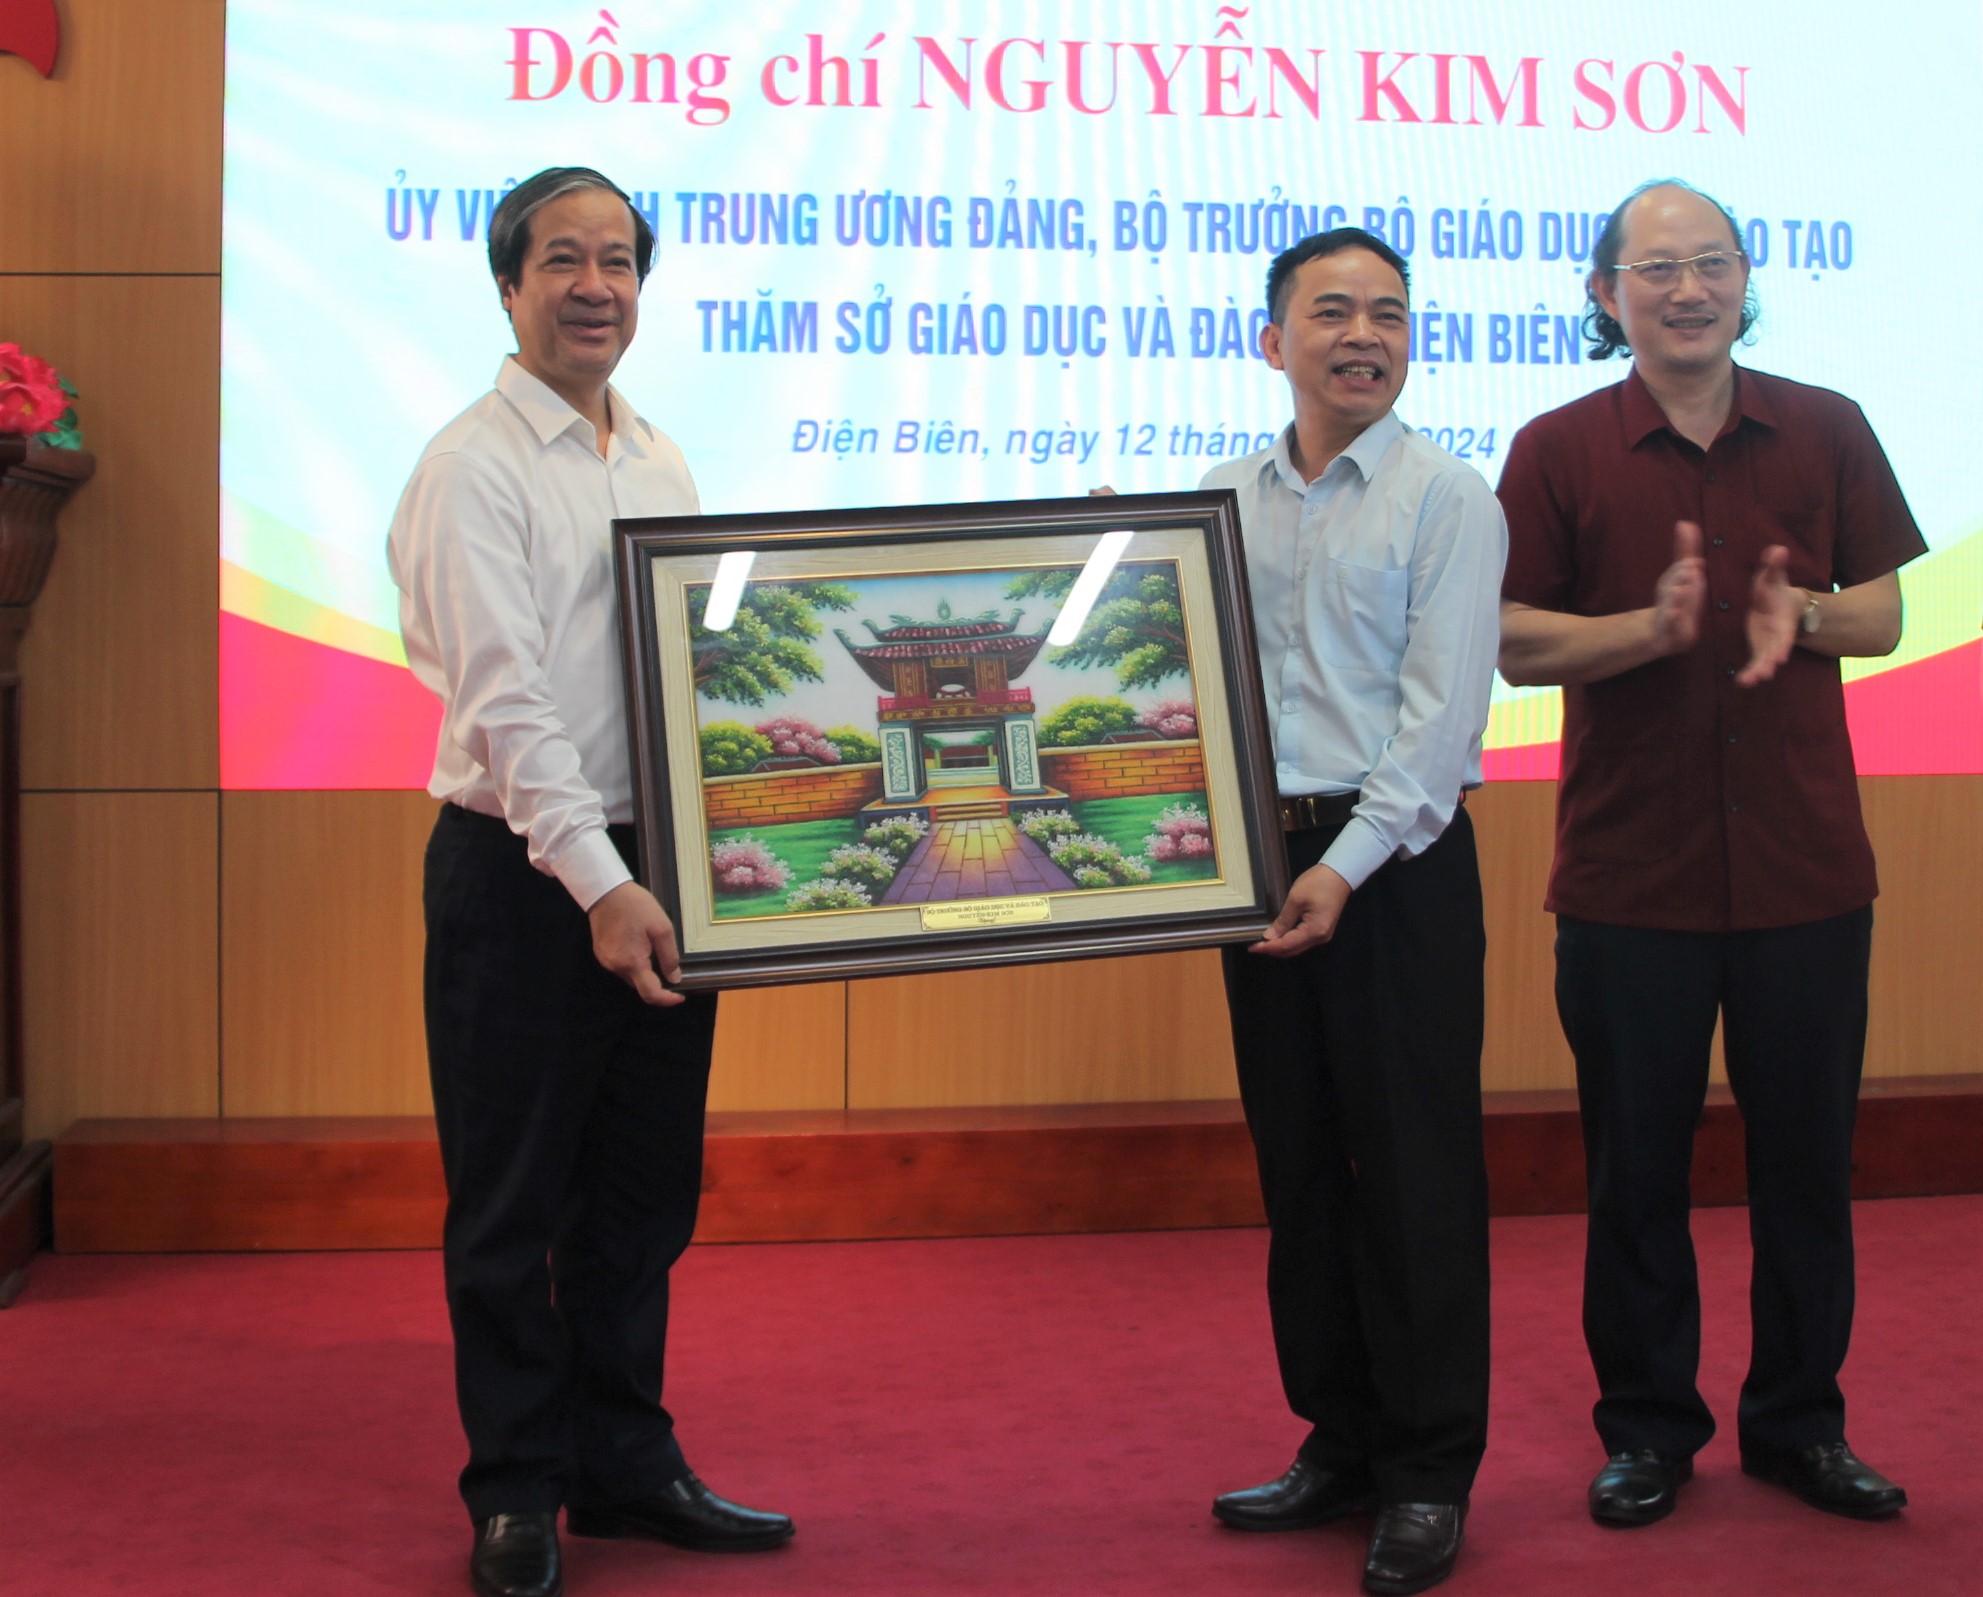 Bộ trưởng Nguyễn Kim Sơn trao tặng tranh lưu niệm cho Sở GD&ĐT tỉnh Điện Biên.